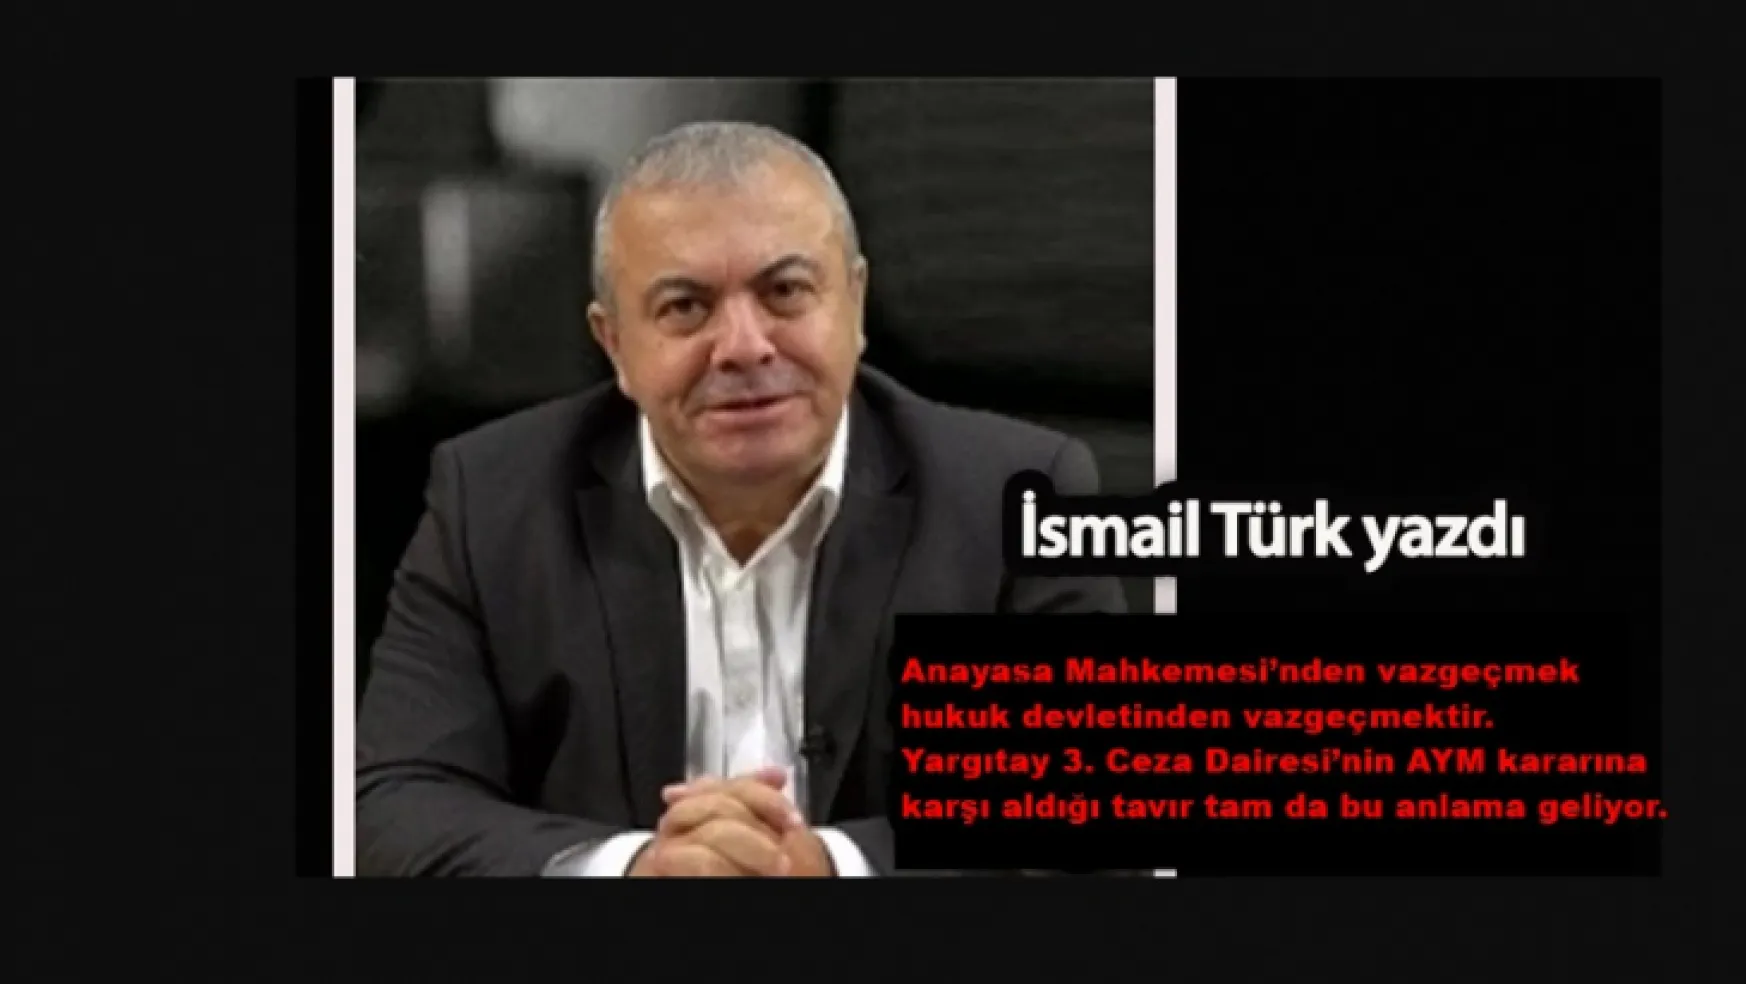 Habererk köşe yazarı İsmail Türk yazdı: Yargıda anarşi